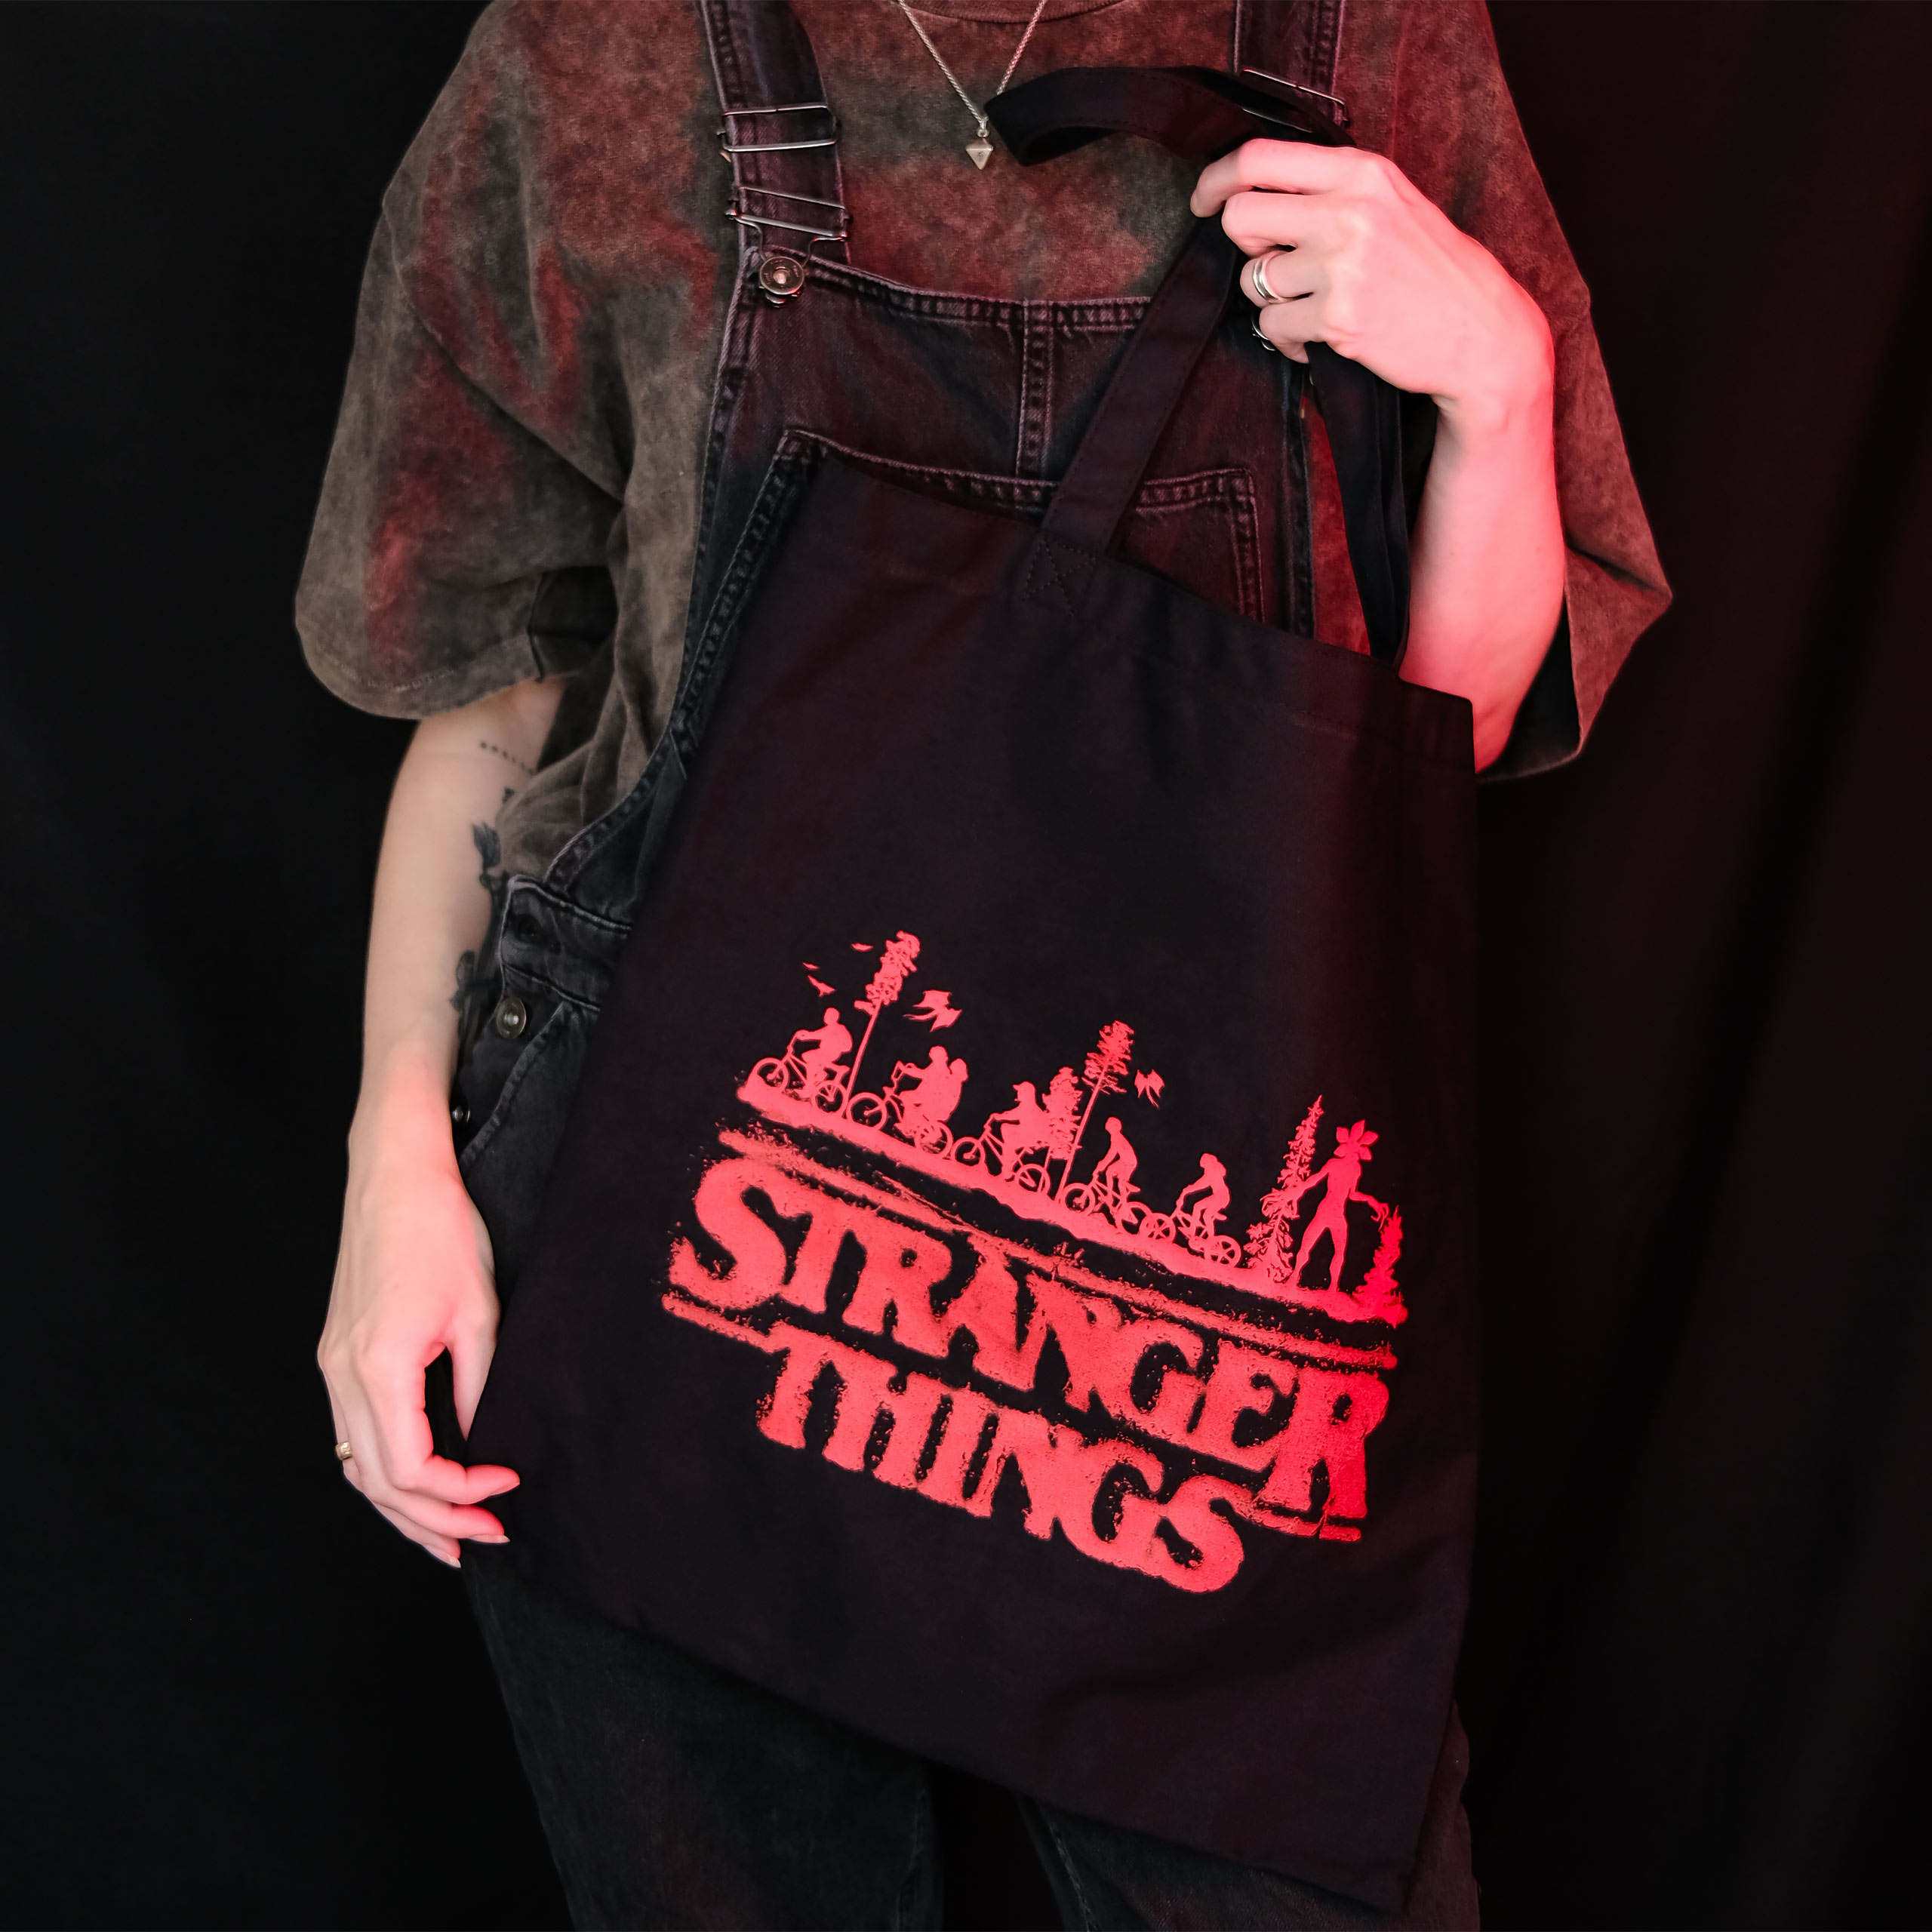 Stranger Things - Logo Tote Bag